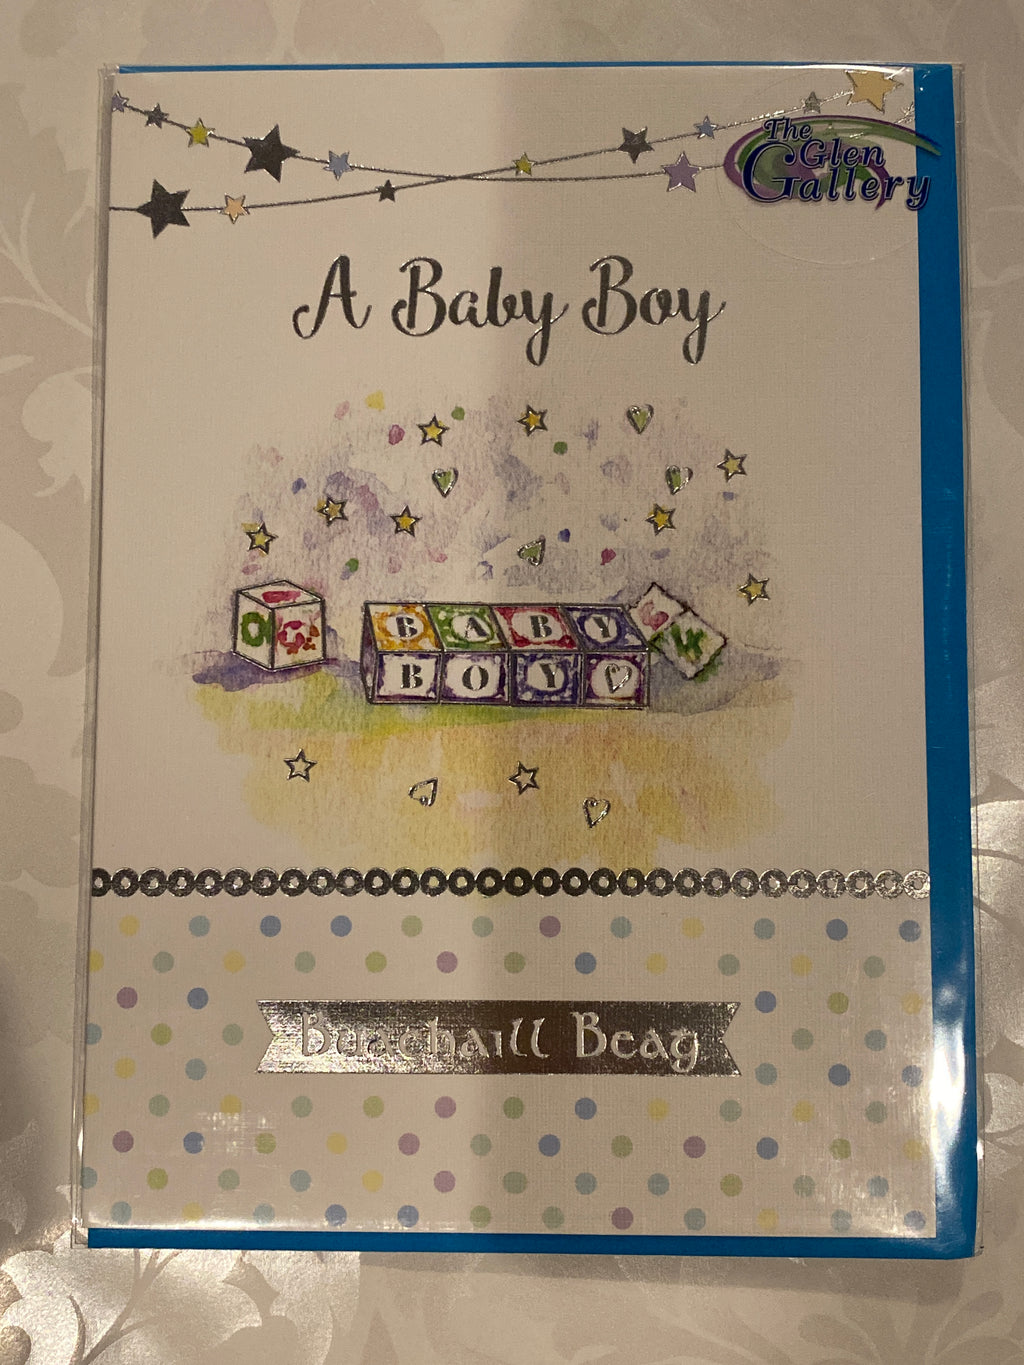 A baby boy greeting card